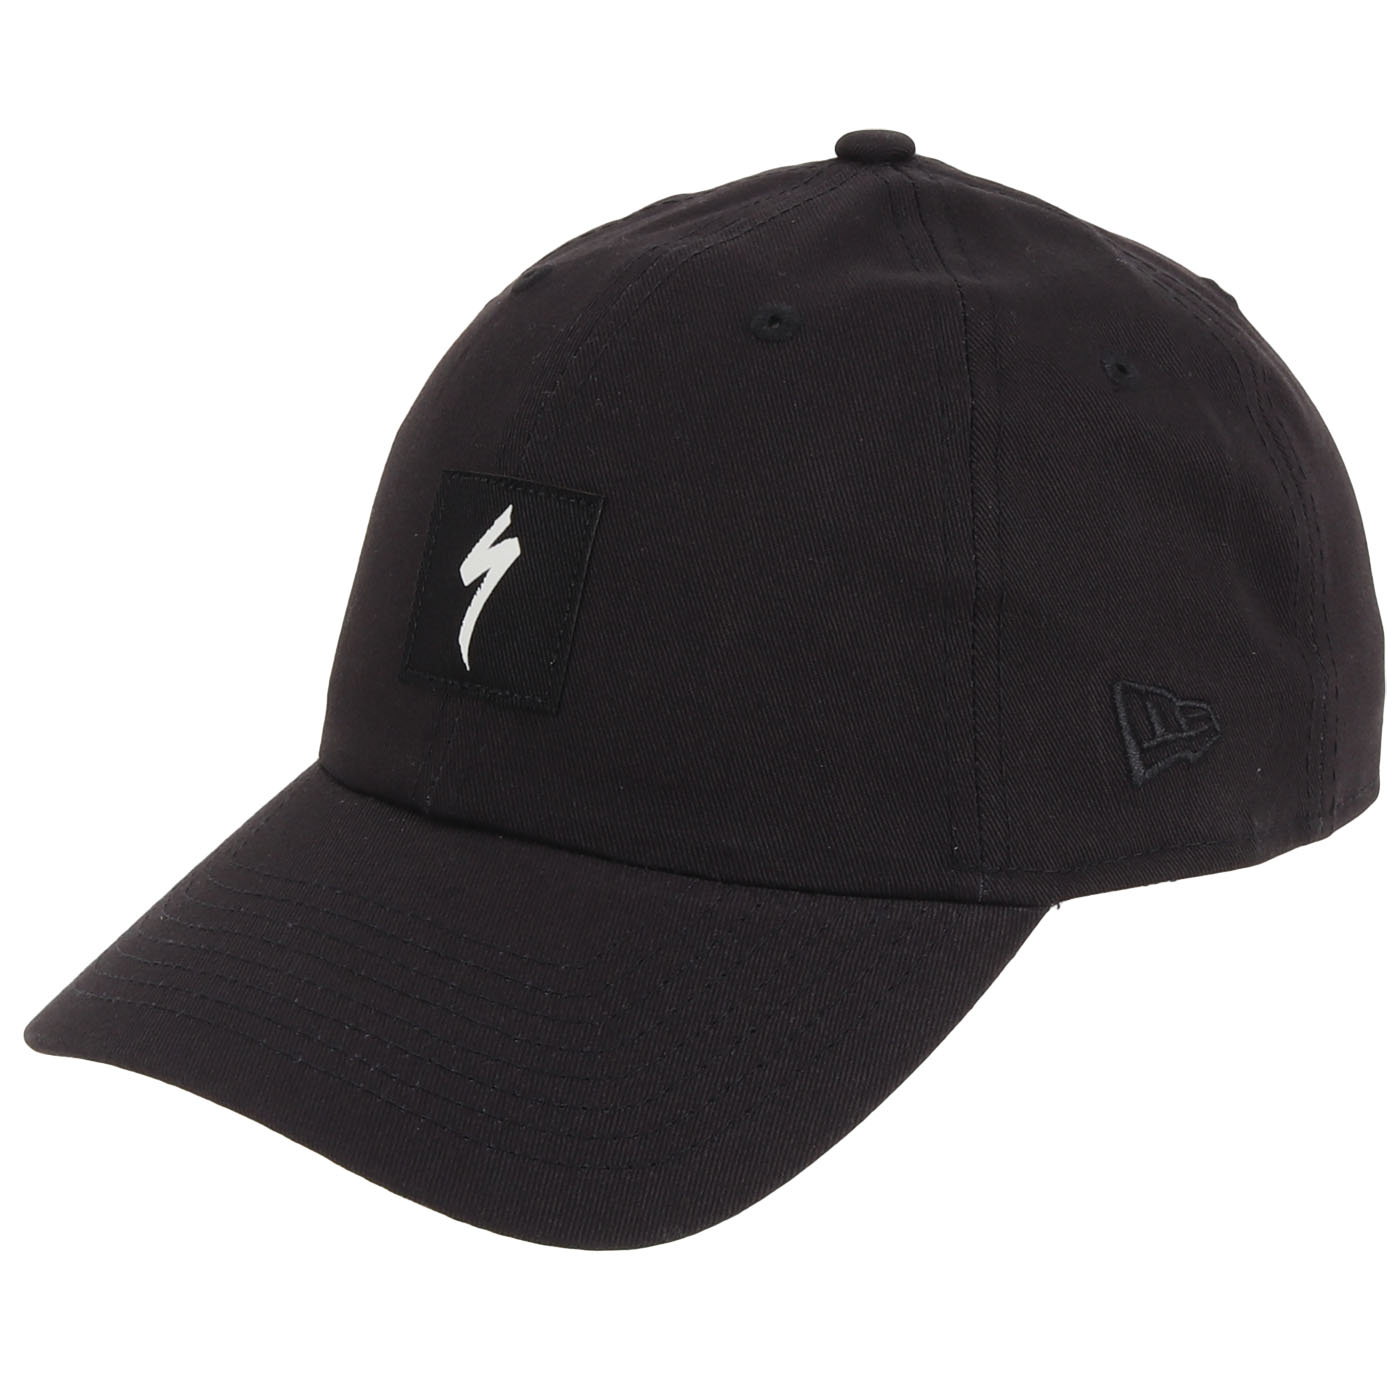 Produktbild von Specialized New Era Classic Specialized Cap - schwarz